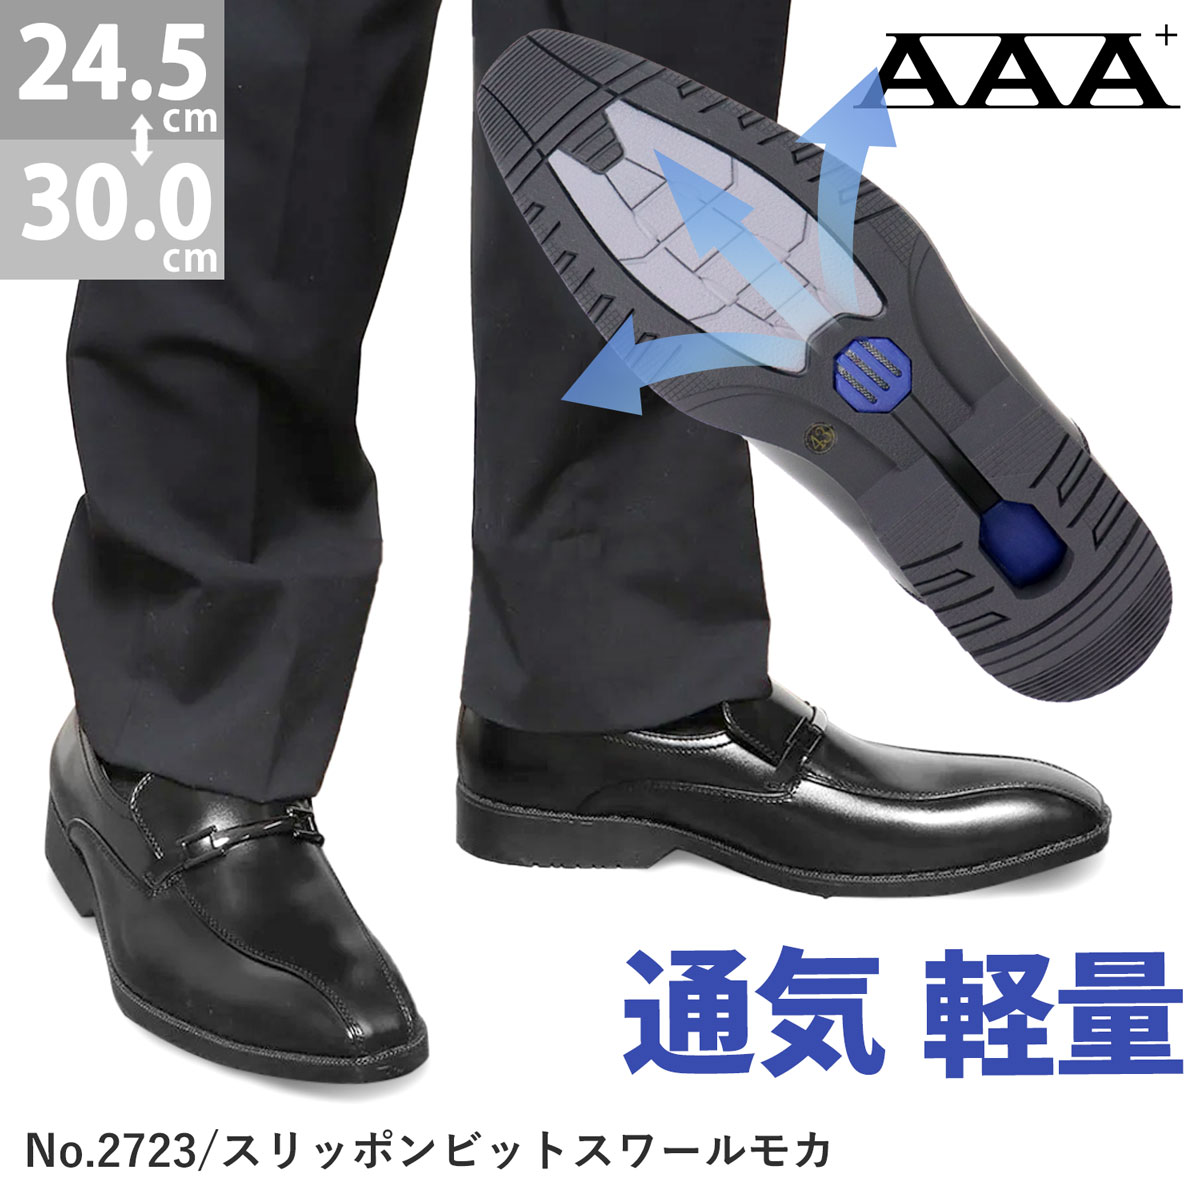 楽天市場】ビジネスシューズ 通気性 軽量 衝撃吸収 革靴 AAA+ サンエー